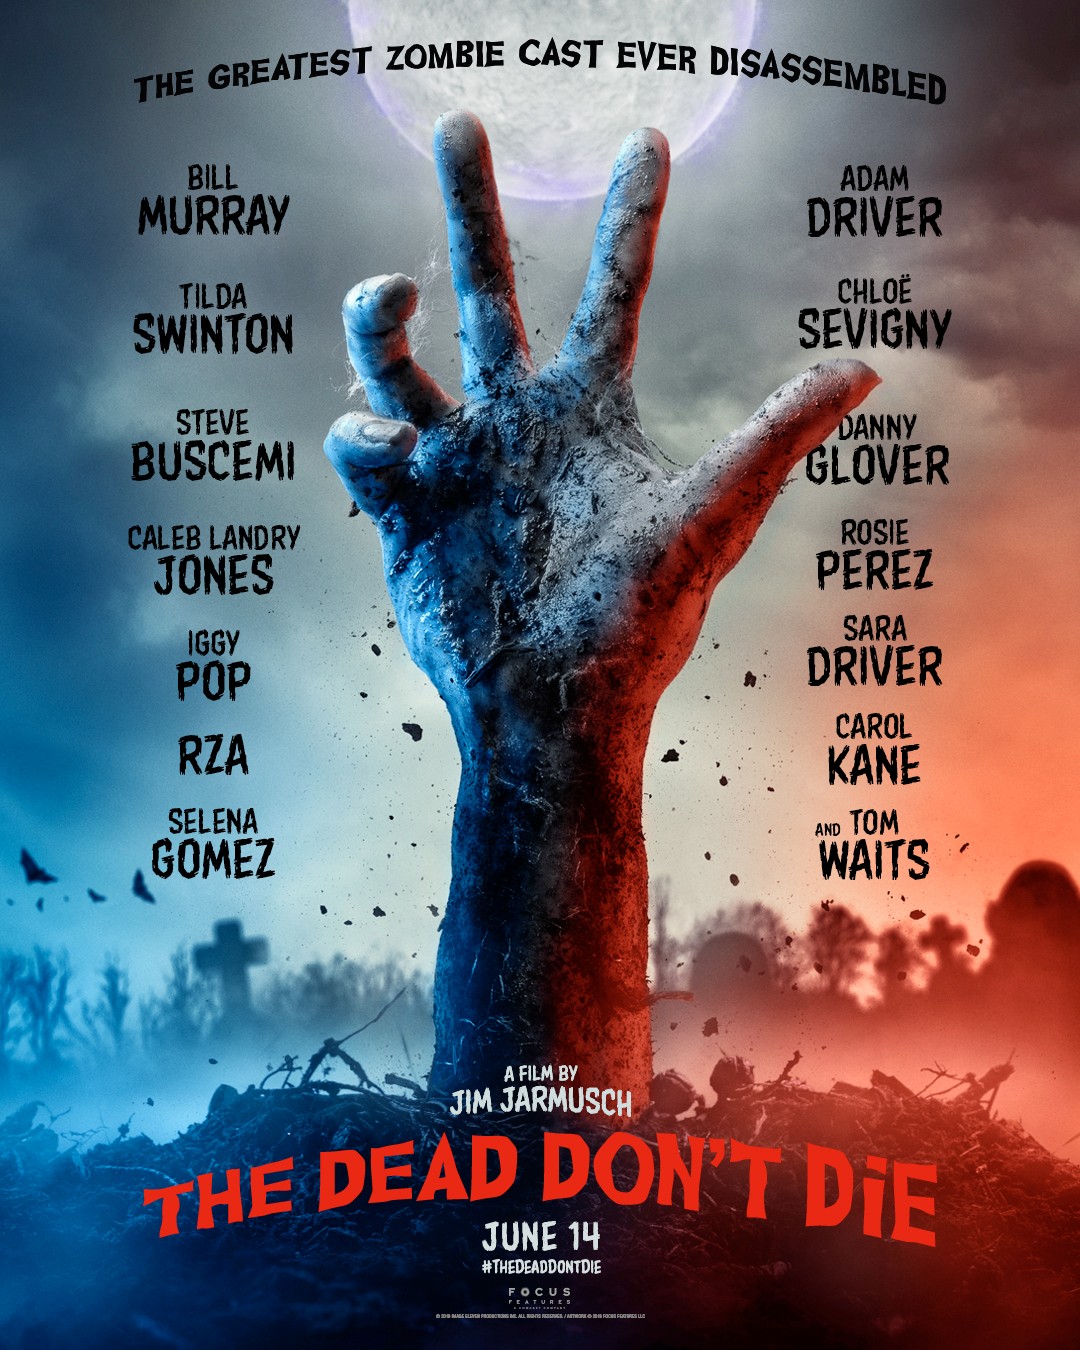 The Dead Don’t Die la pelicula de zombies con Iggy Pop, Tom Waits, Selena Gómez, RZA, Bill Murray y más